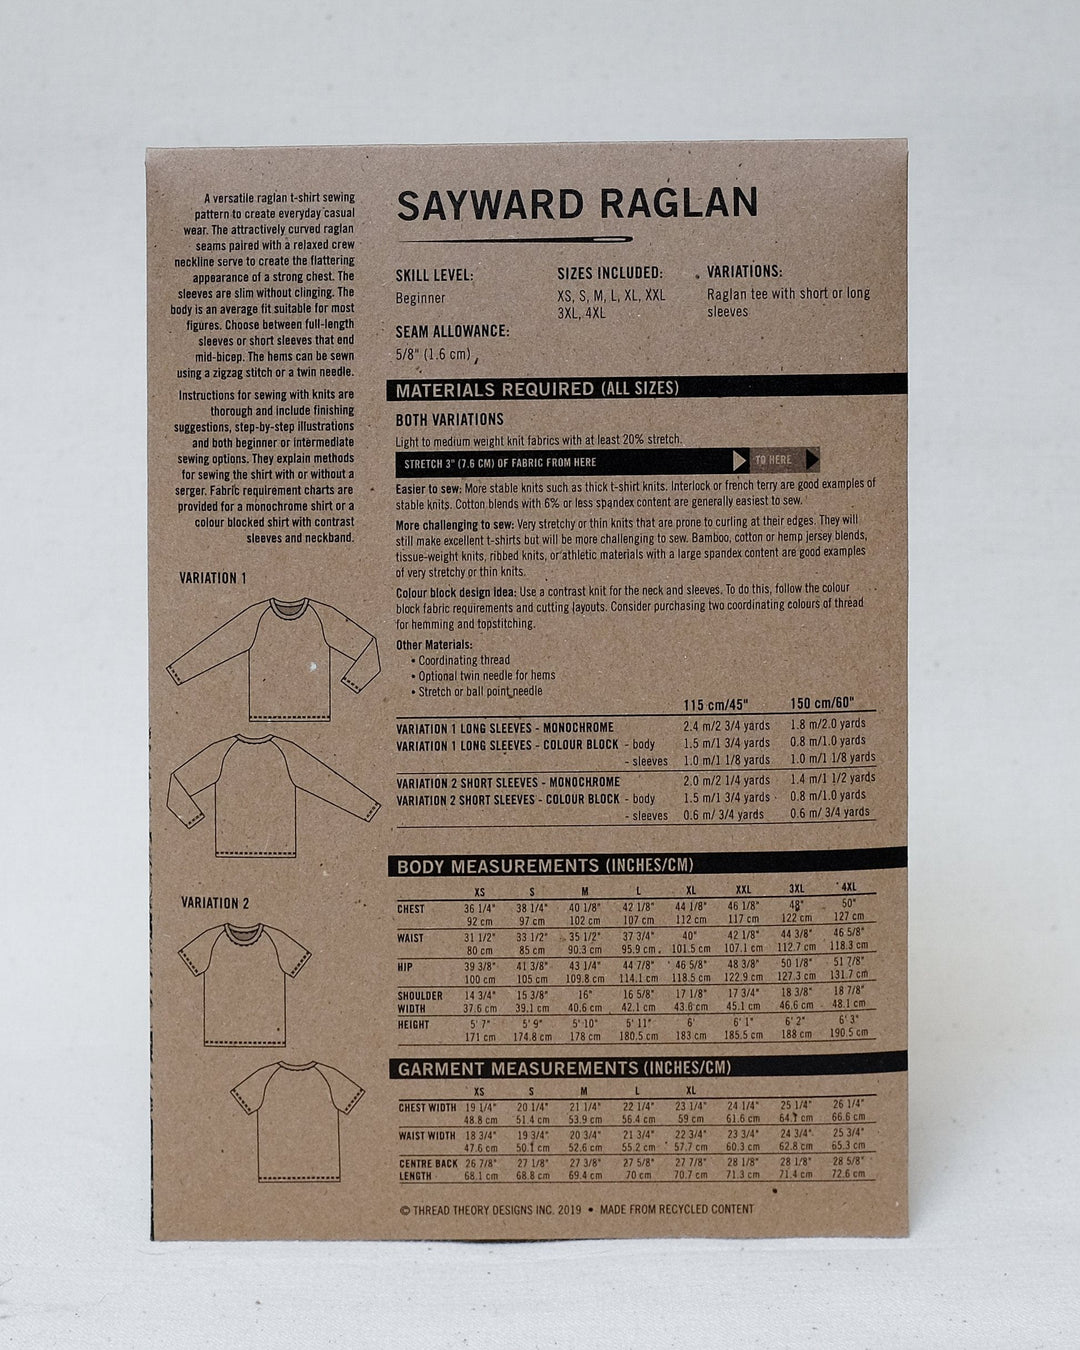 Sayward Raglan - Thread Theory